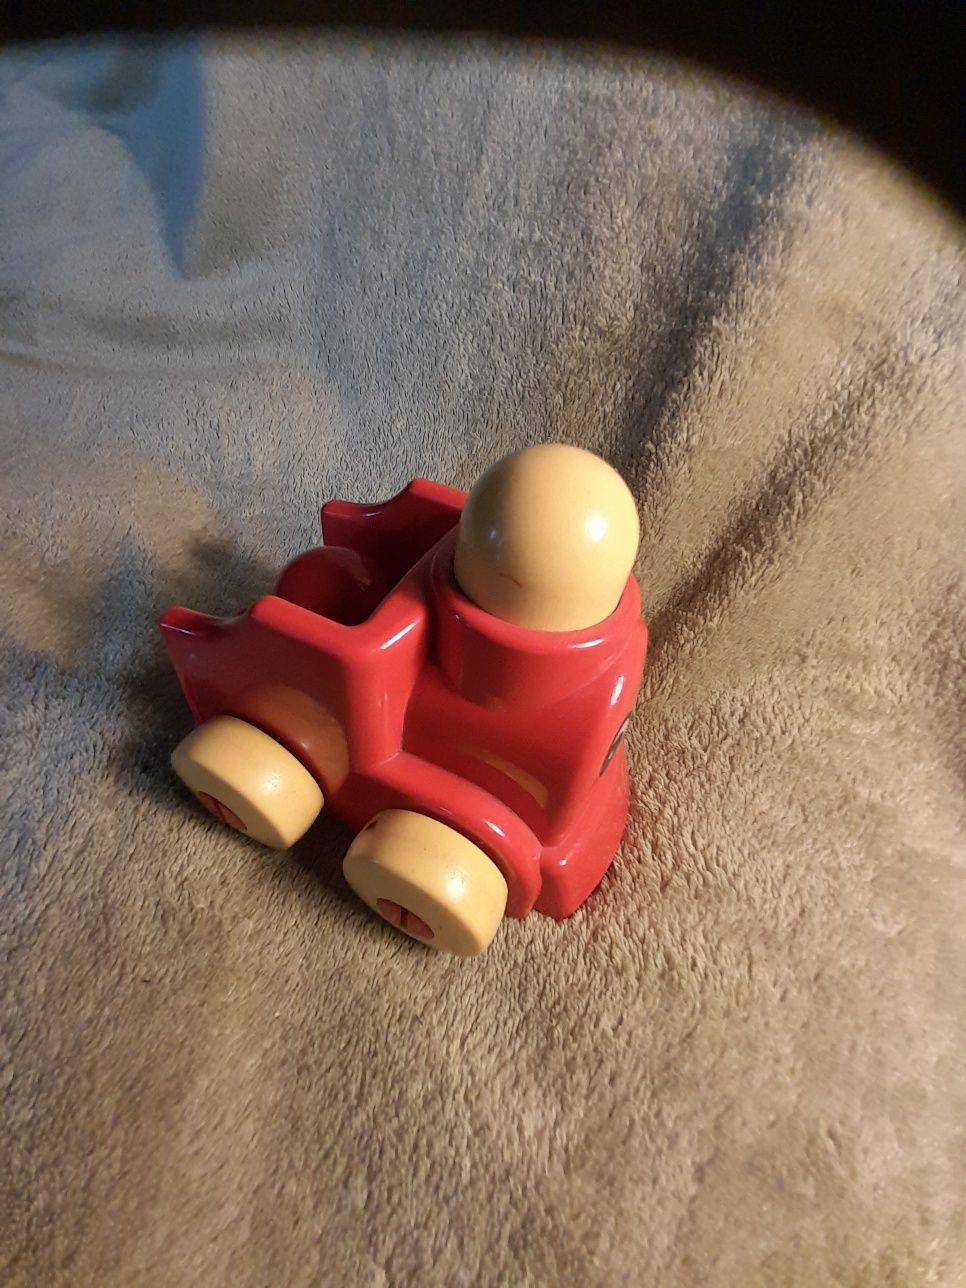 Lego Primo pierwsze klocki samochód pociąg ciuchcia czerwona